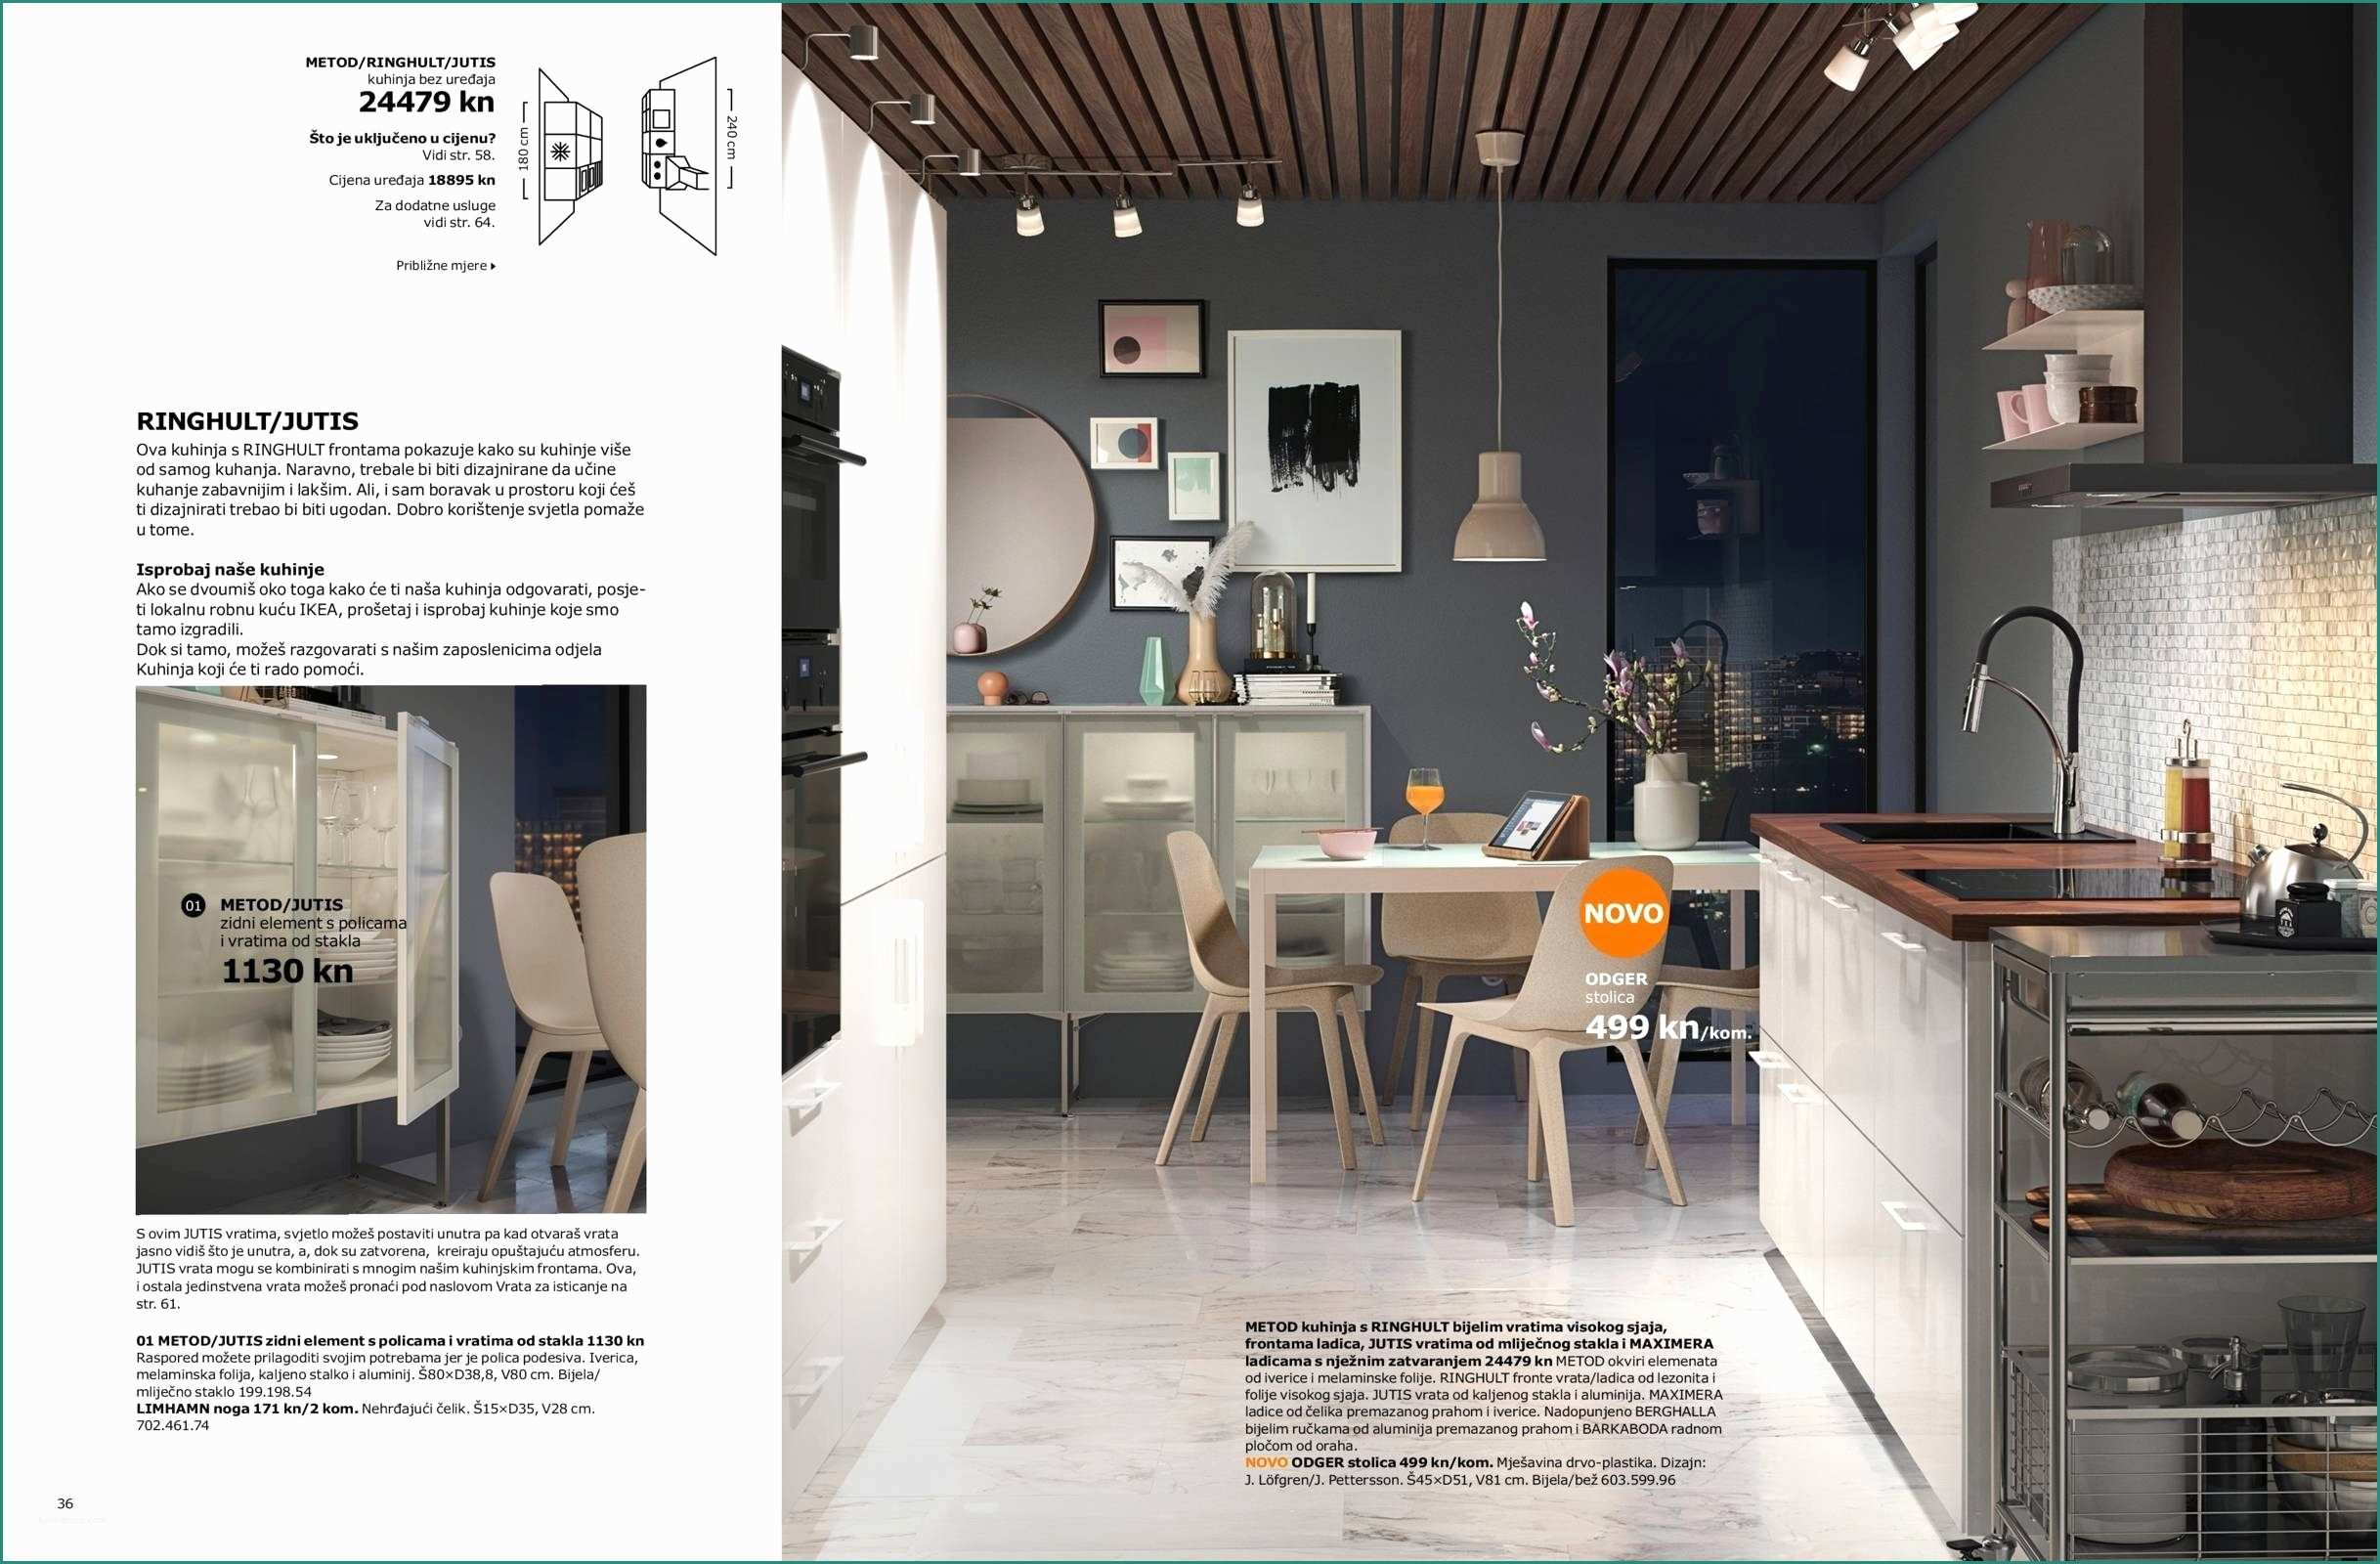 Porte A soffietto Moderne E 23 Reference Porte A Libro Ikea – Design Per La Casa